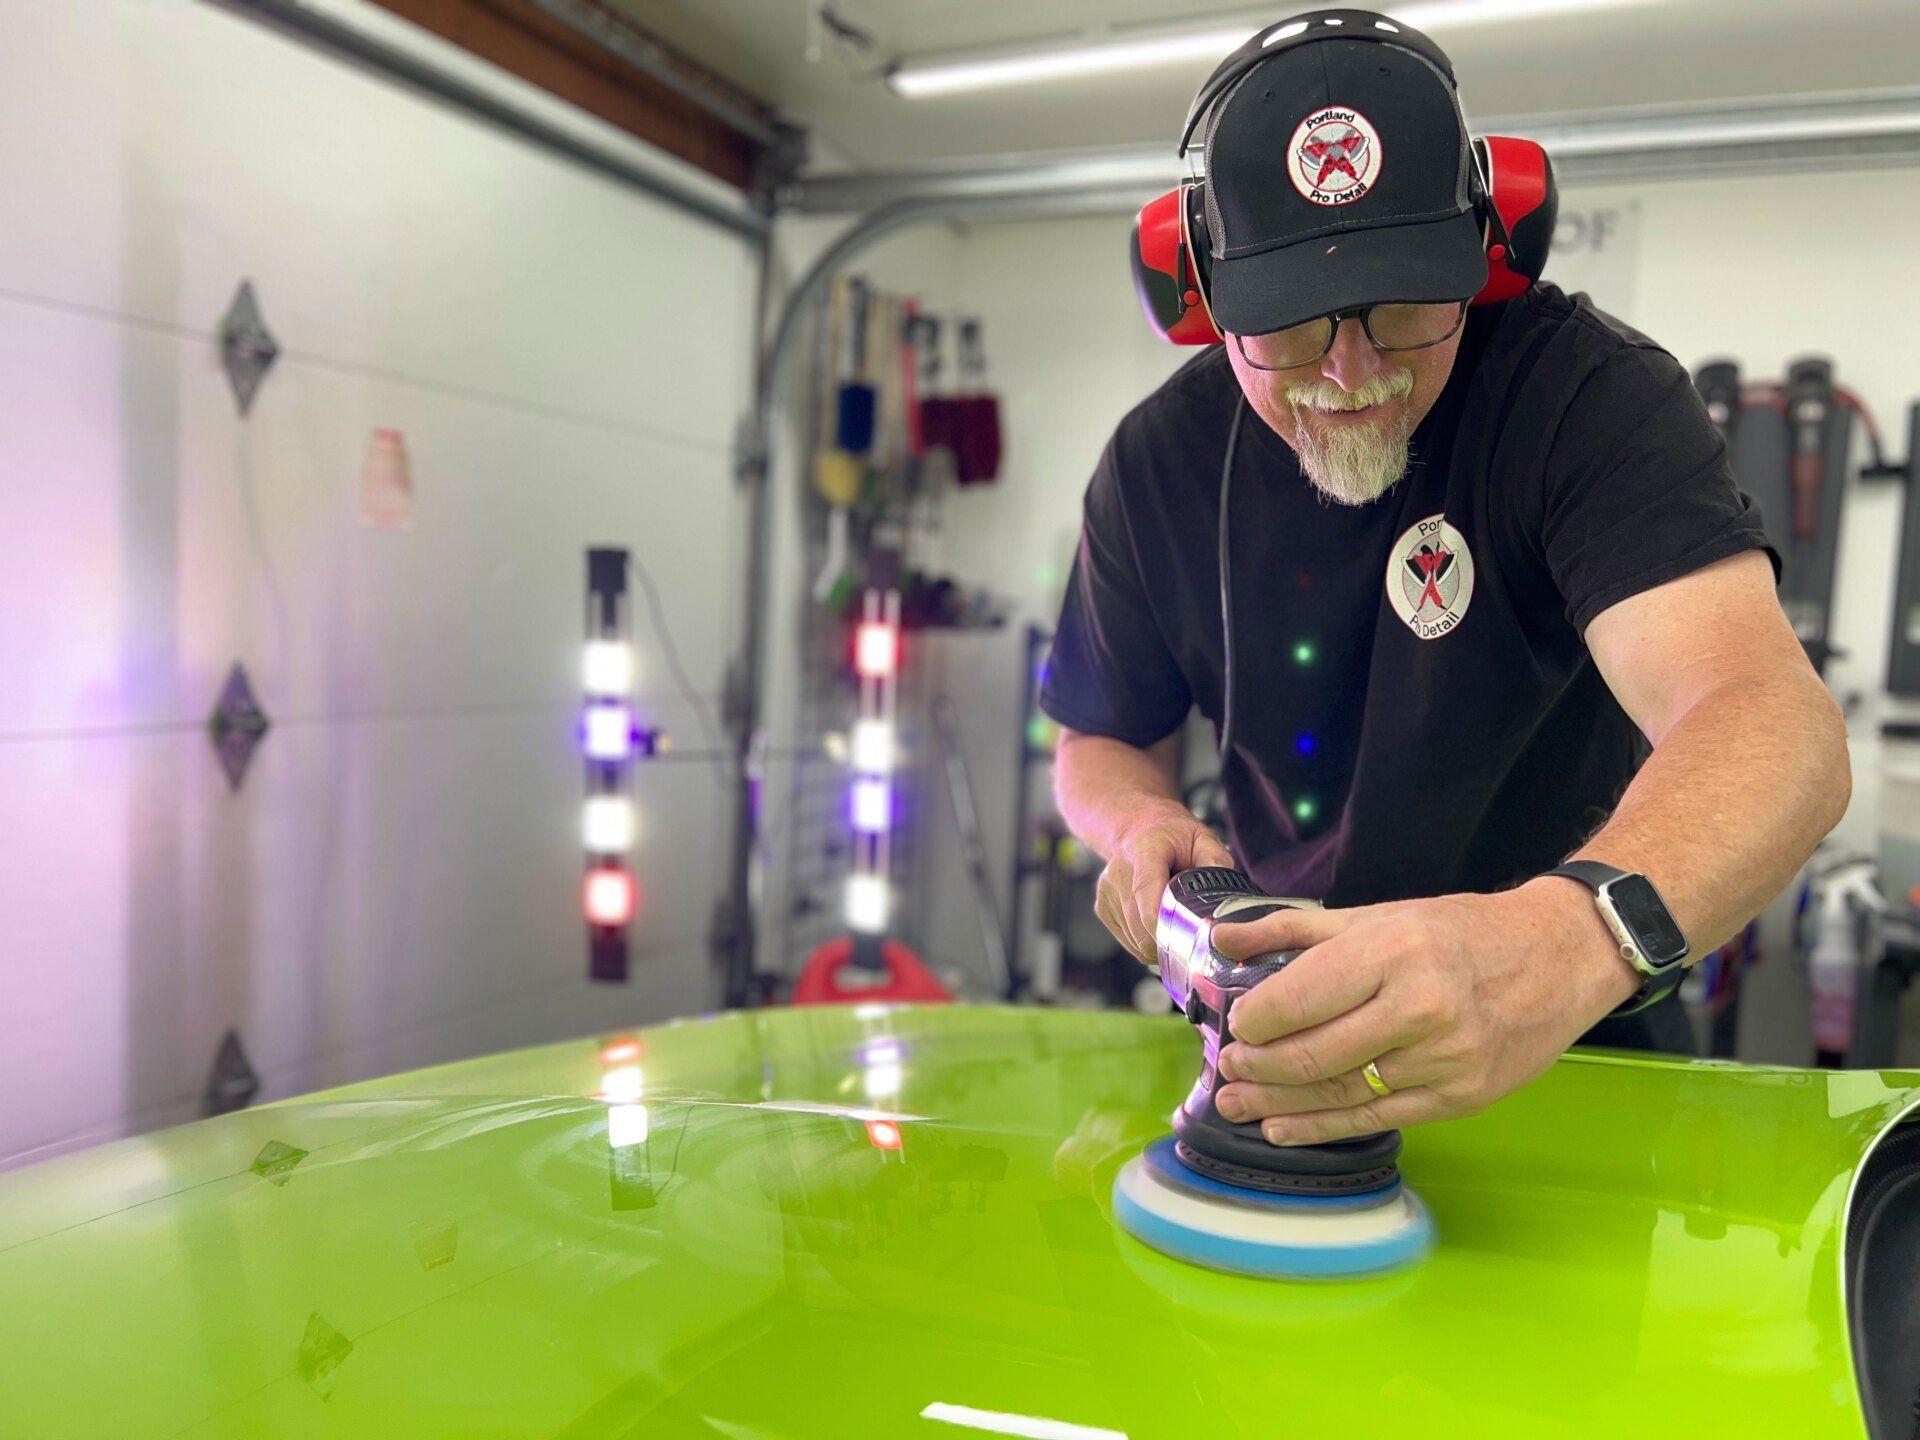 a man is polishing a green car in a garage .